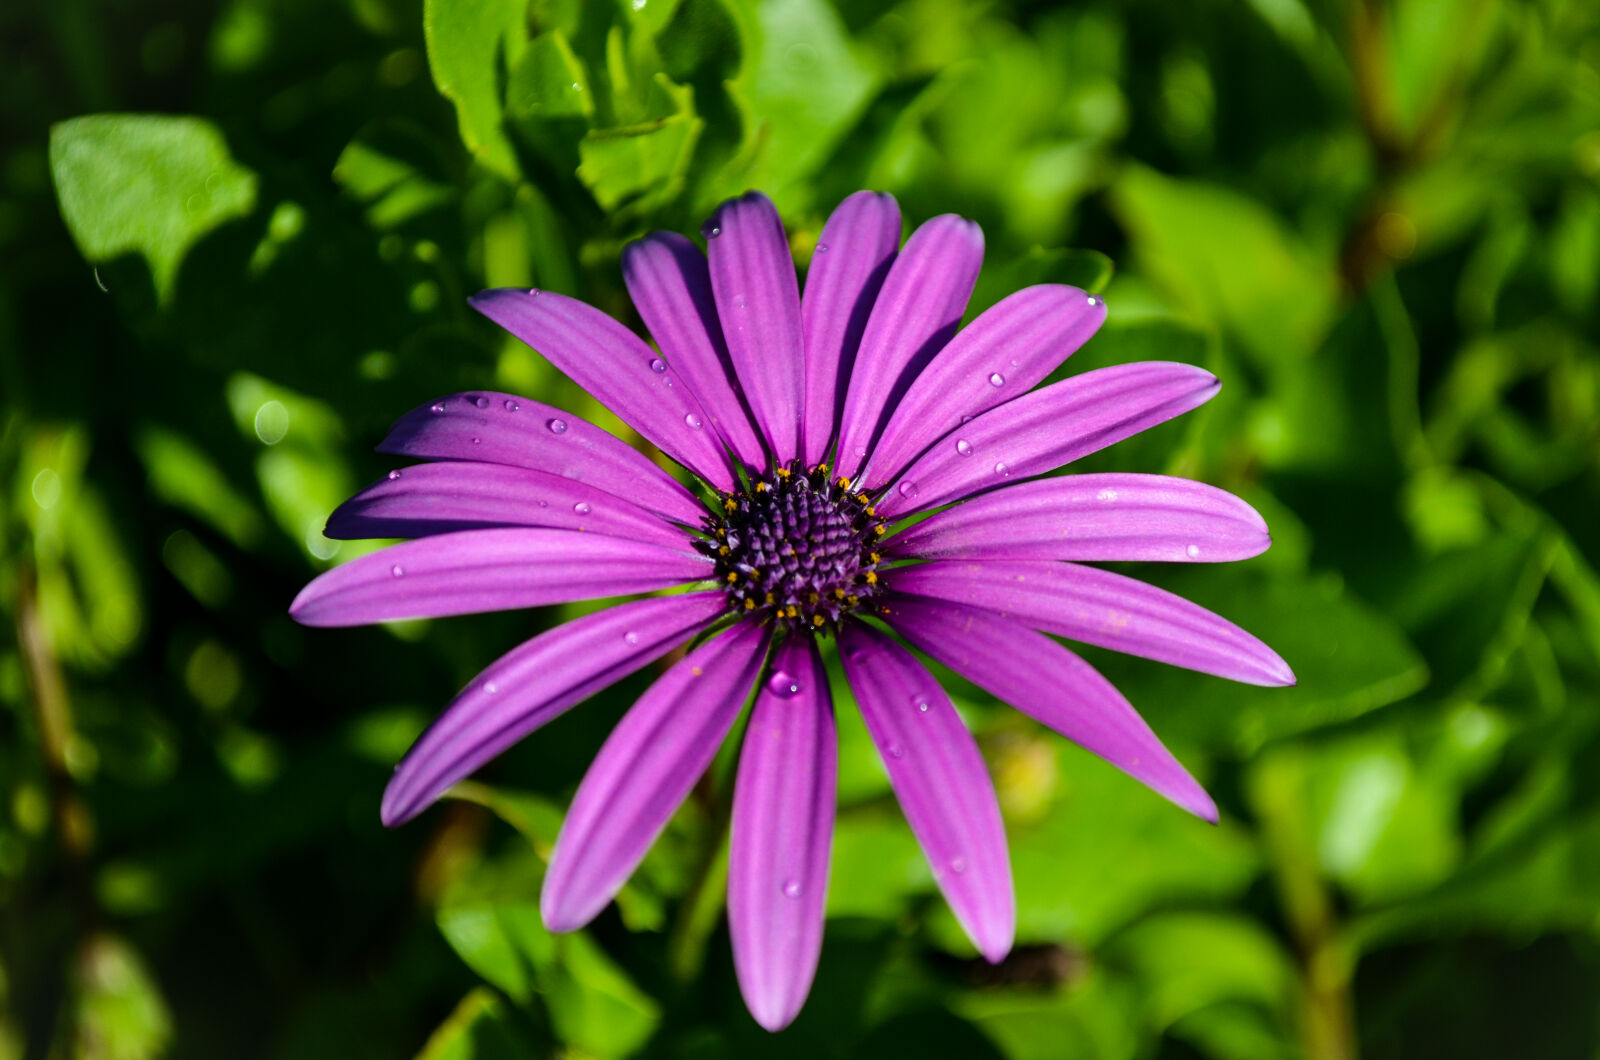 Nikon AF-S DX Nikkor 18-55mm F3.5-5.6G VR sample photo. Purple flower in garden photography